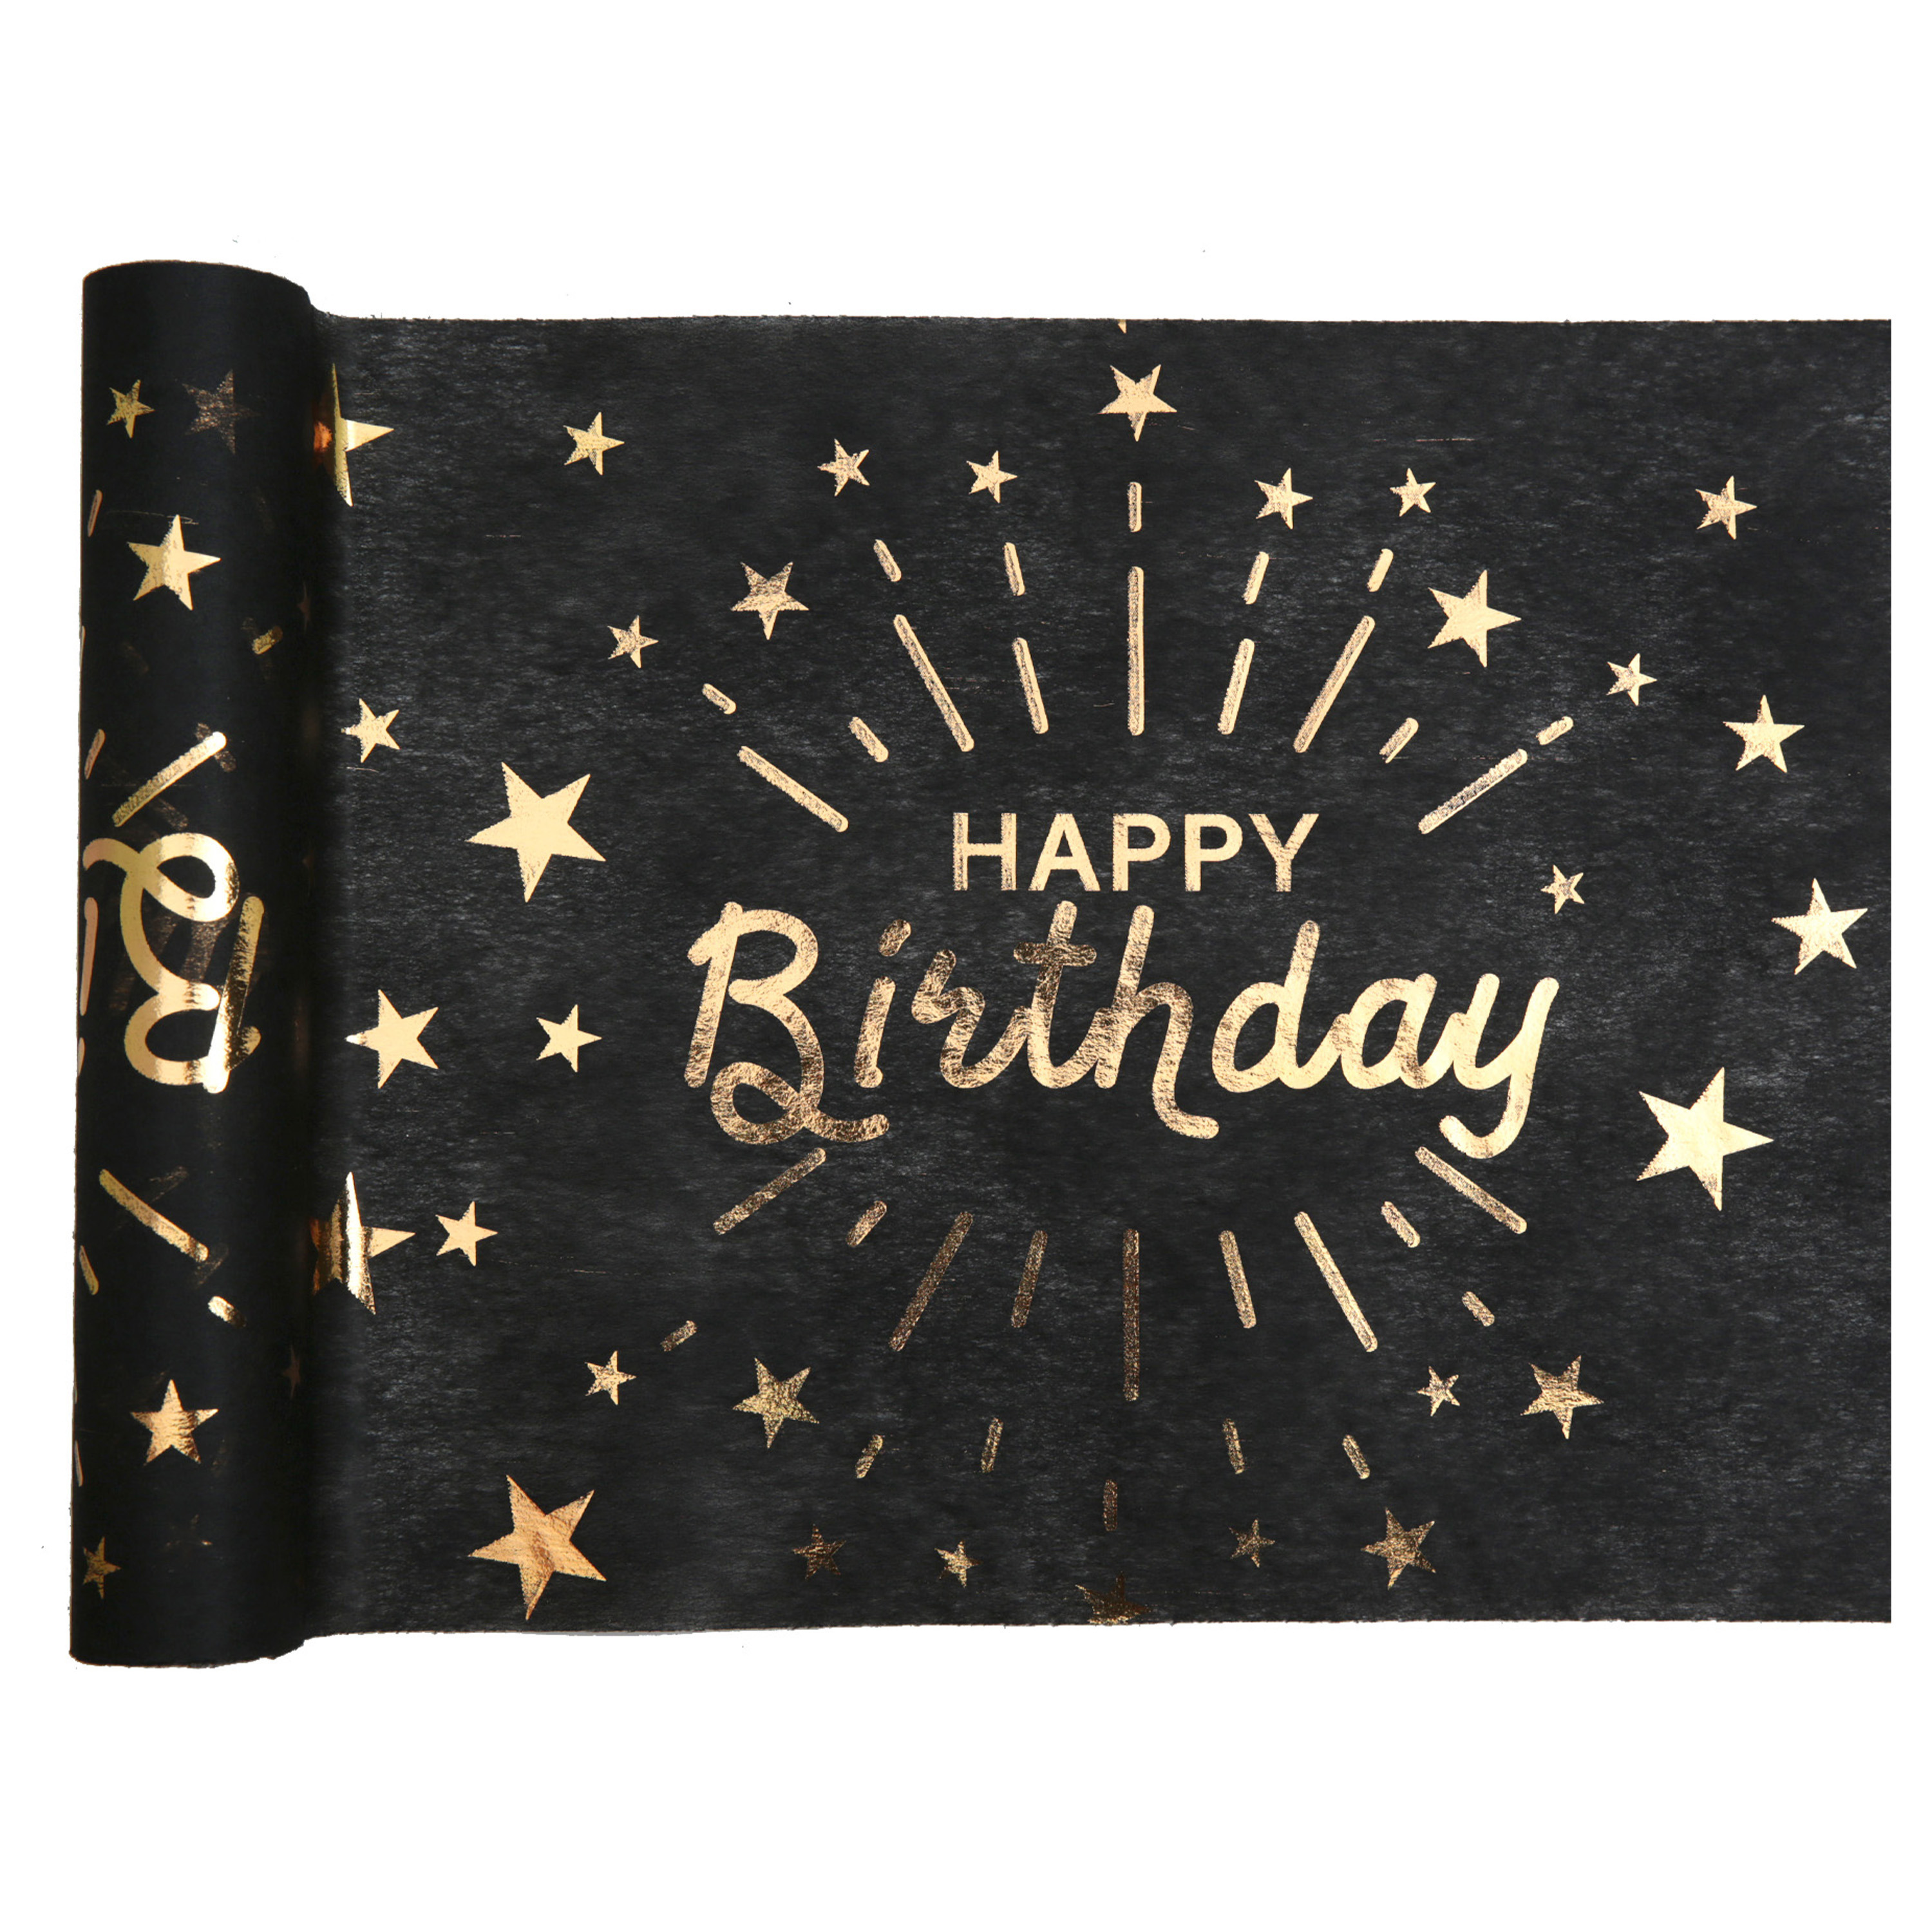 Santex Tischläufer "Happy Birthday" in schwarz-gold aus Polyester, 5m x 30cm